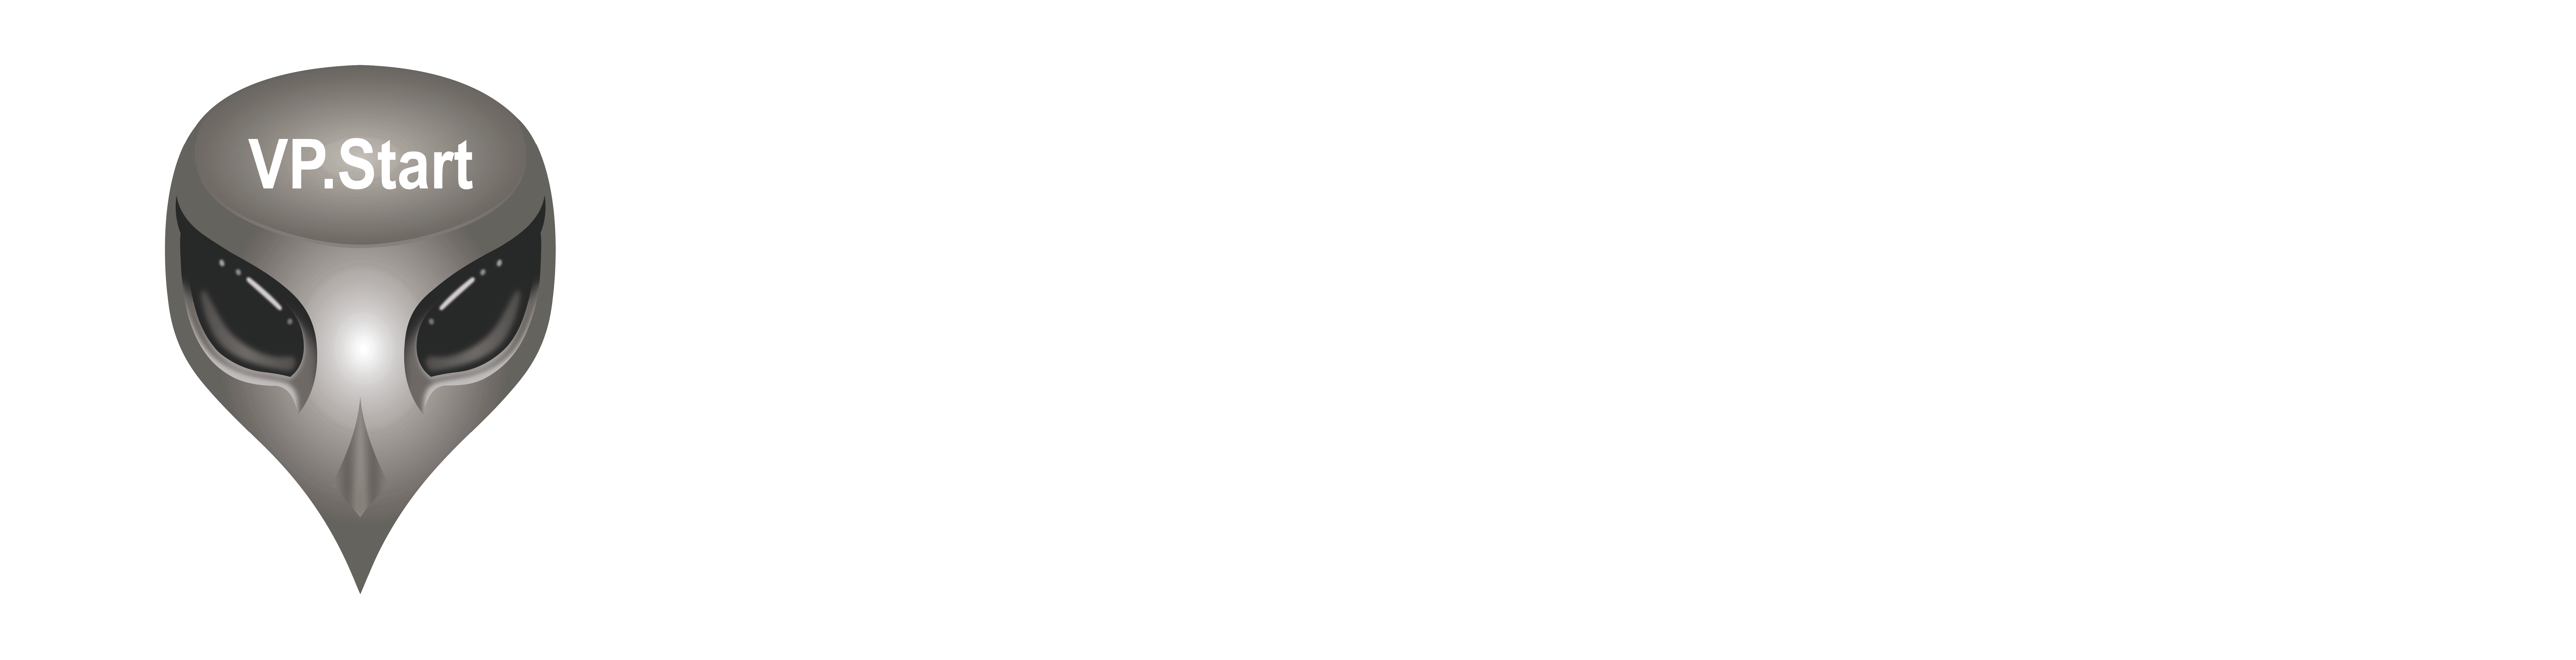 VP.Start Technology